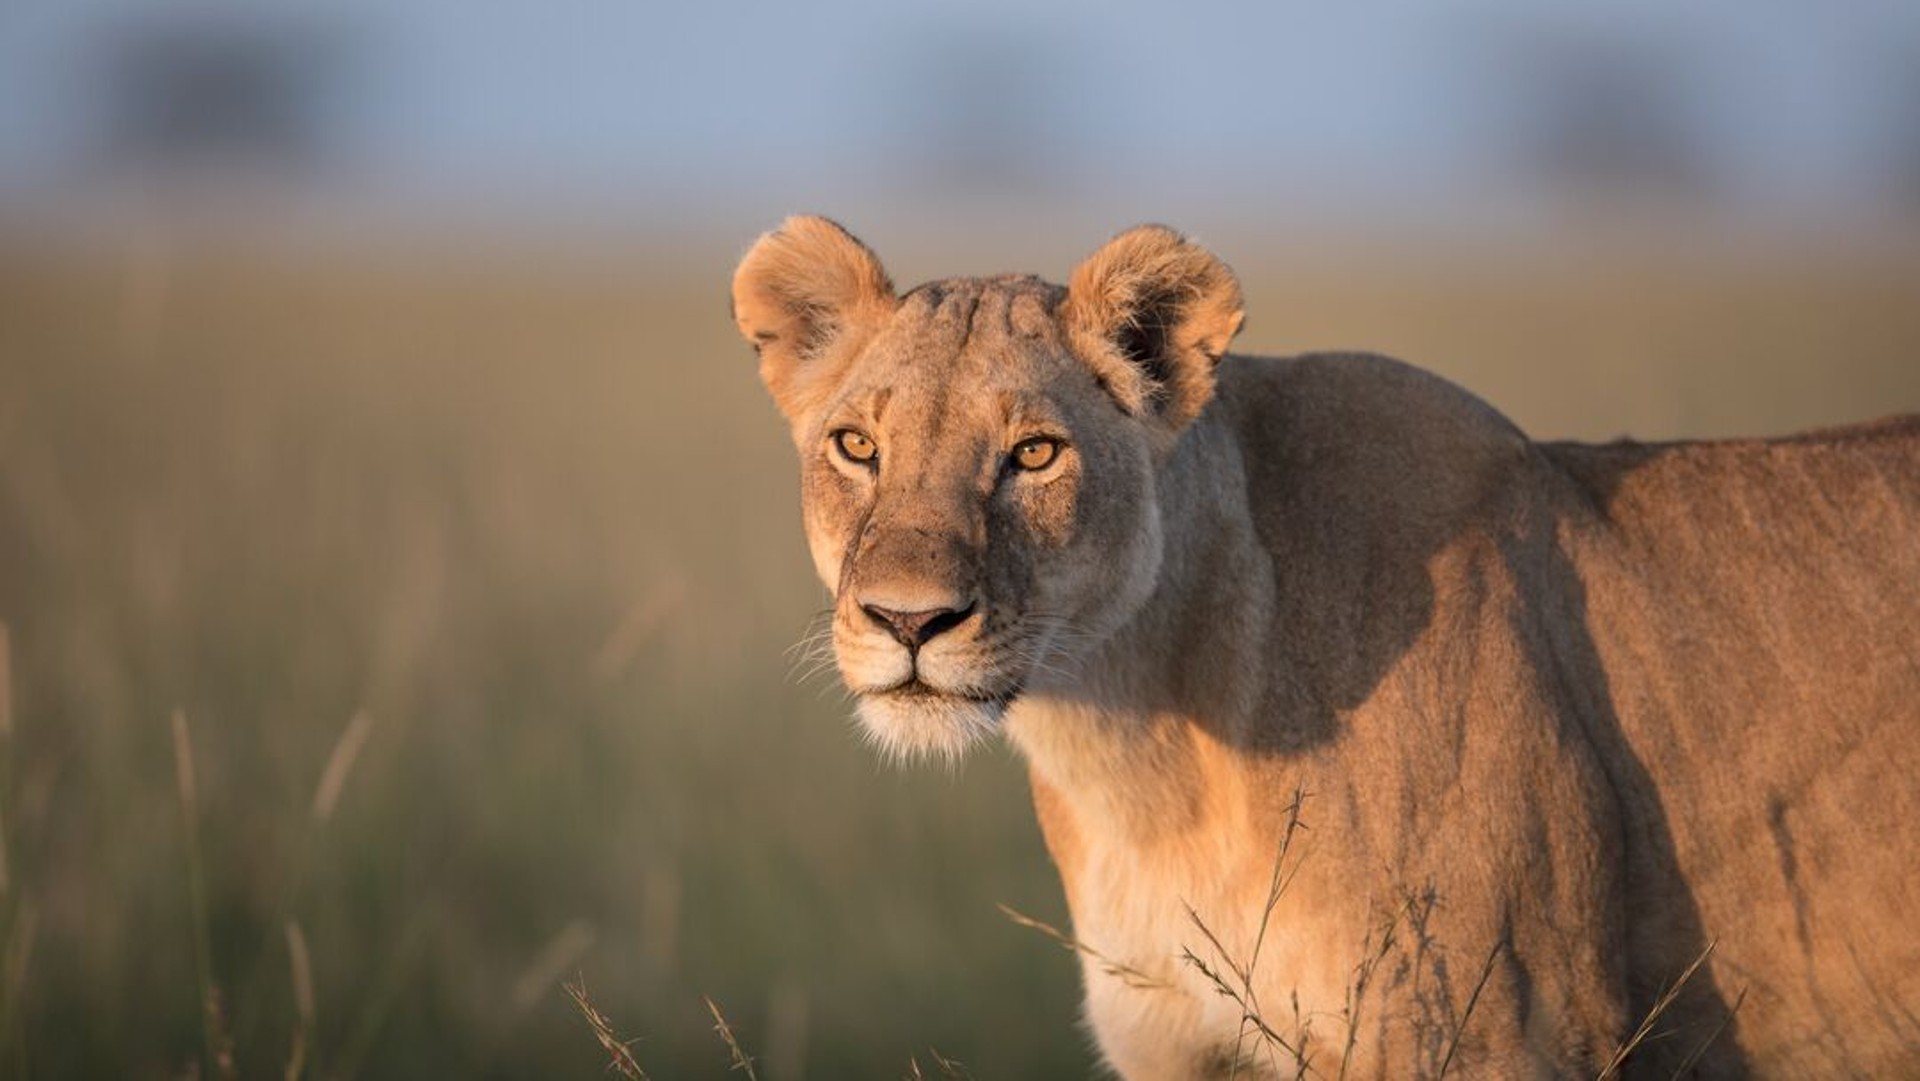 A lioness walking through long grass